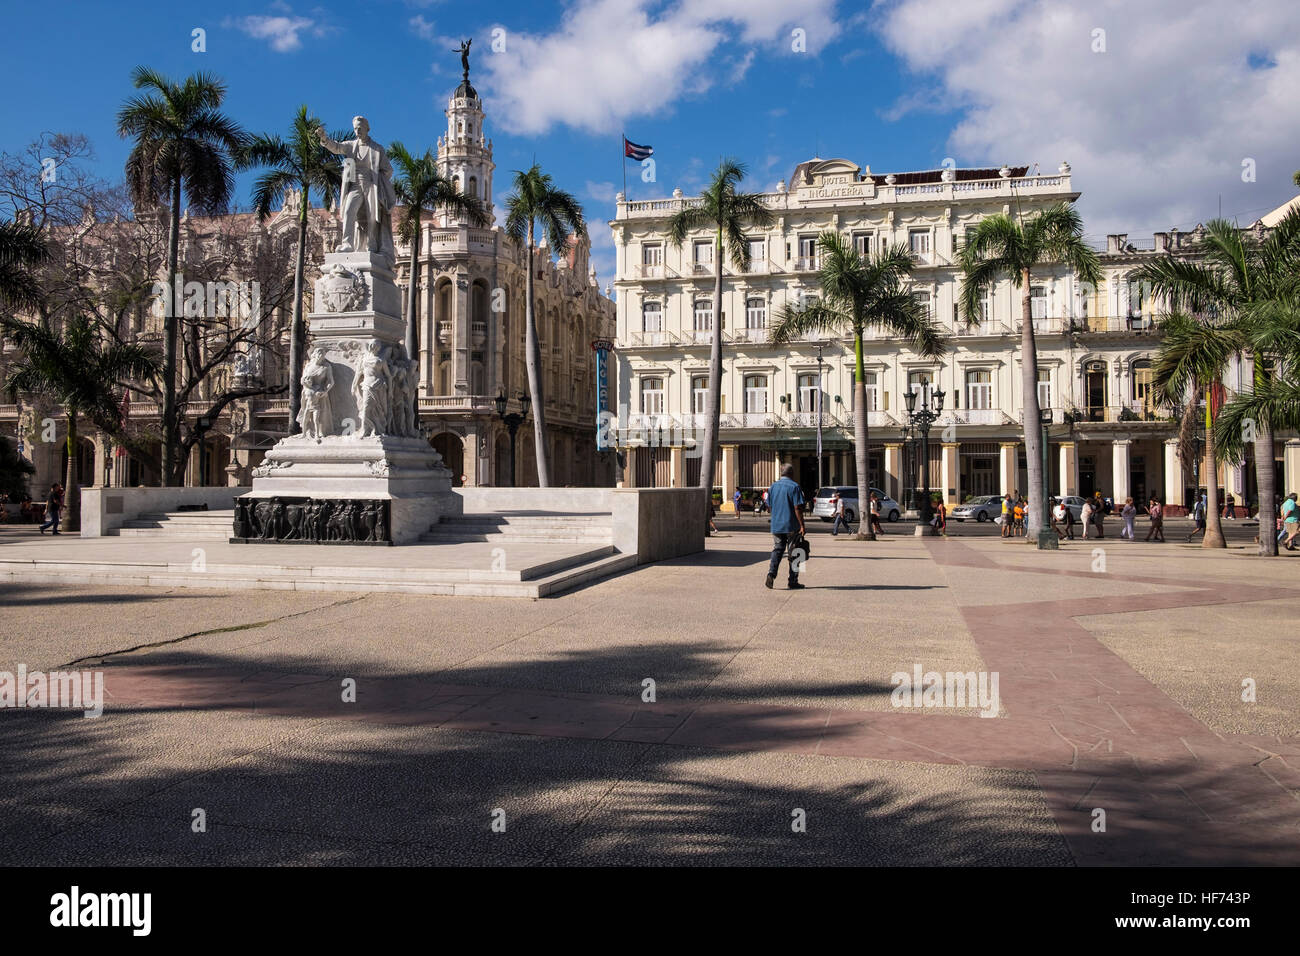 Statua di Jose Marti nel Parque Central, al central park di fronte all'hotel Inglaterra e Gran Teatro, La Havana, Cuba. Foto Stock